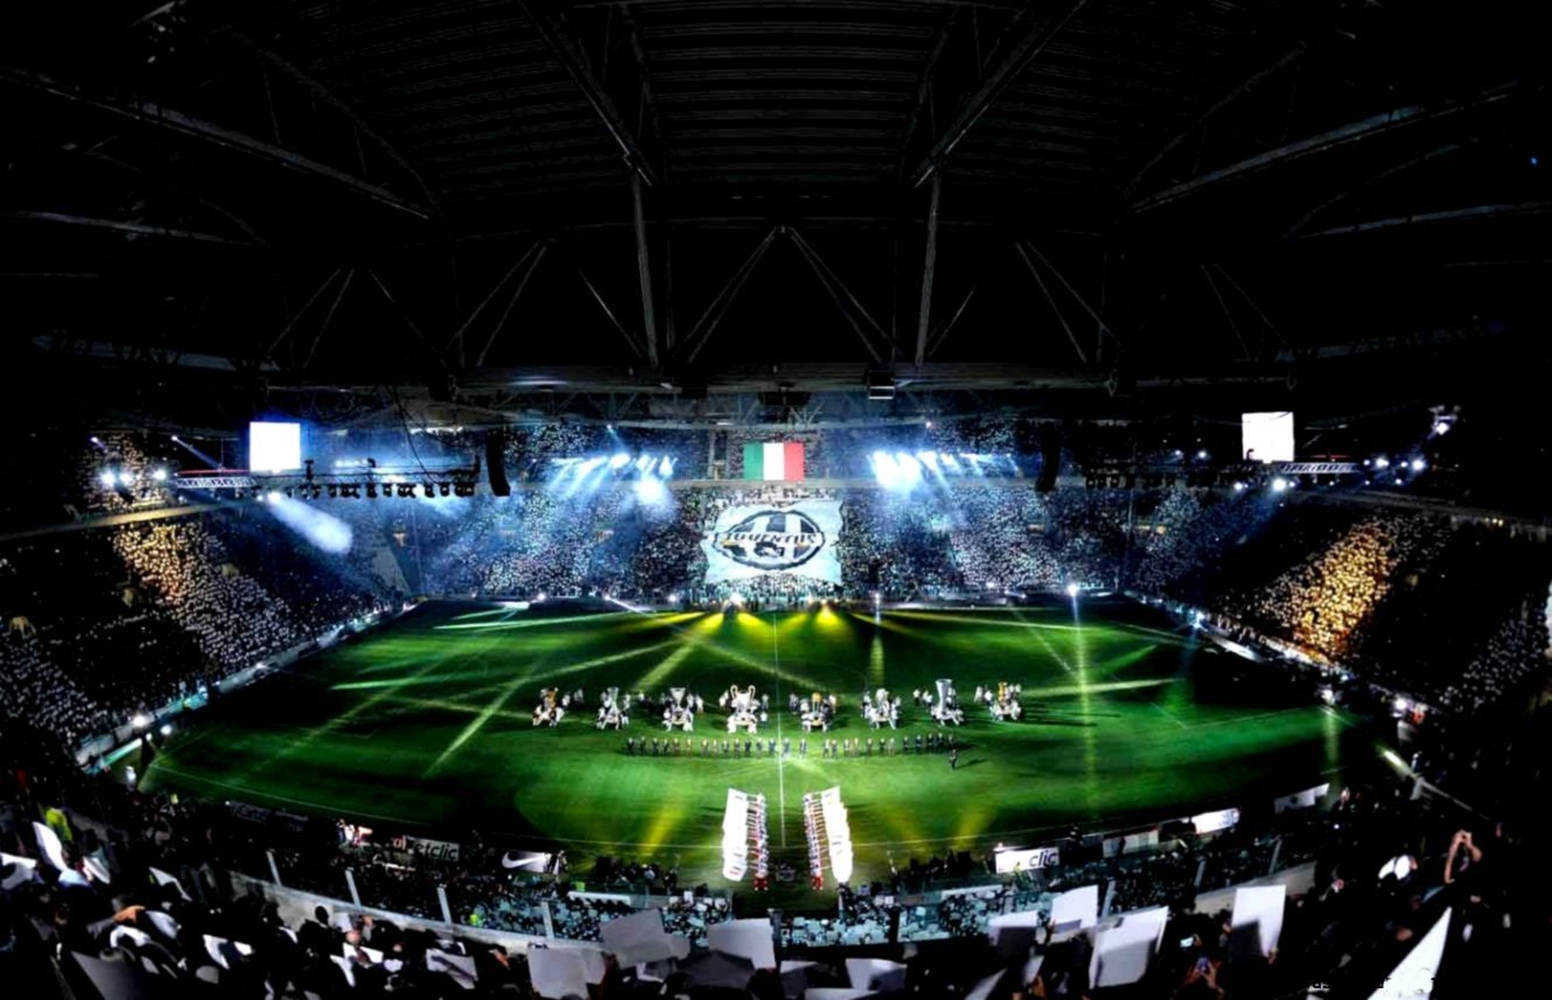 Juventus Football Club's Historic Allianz Stadium Picture